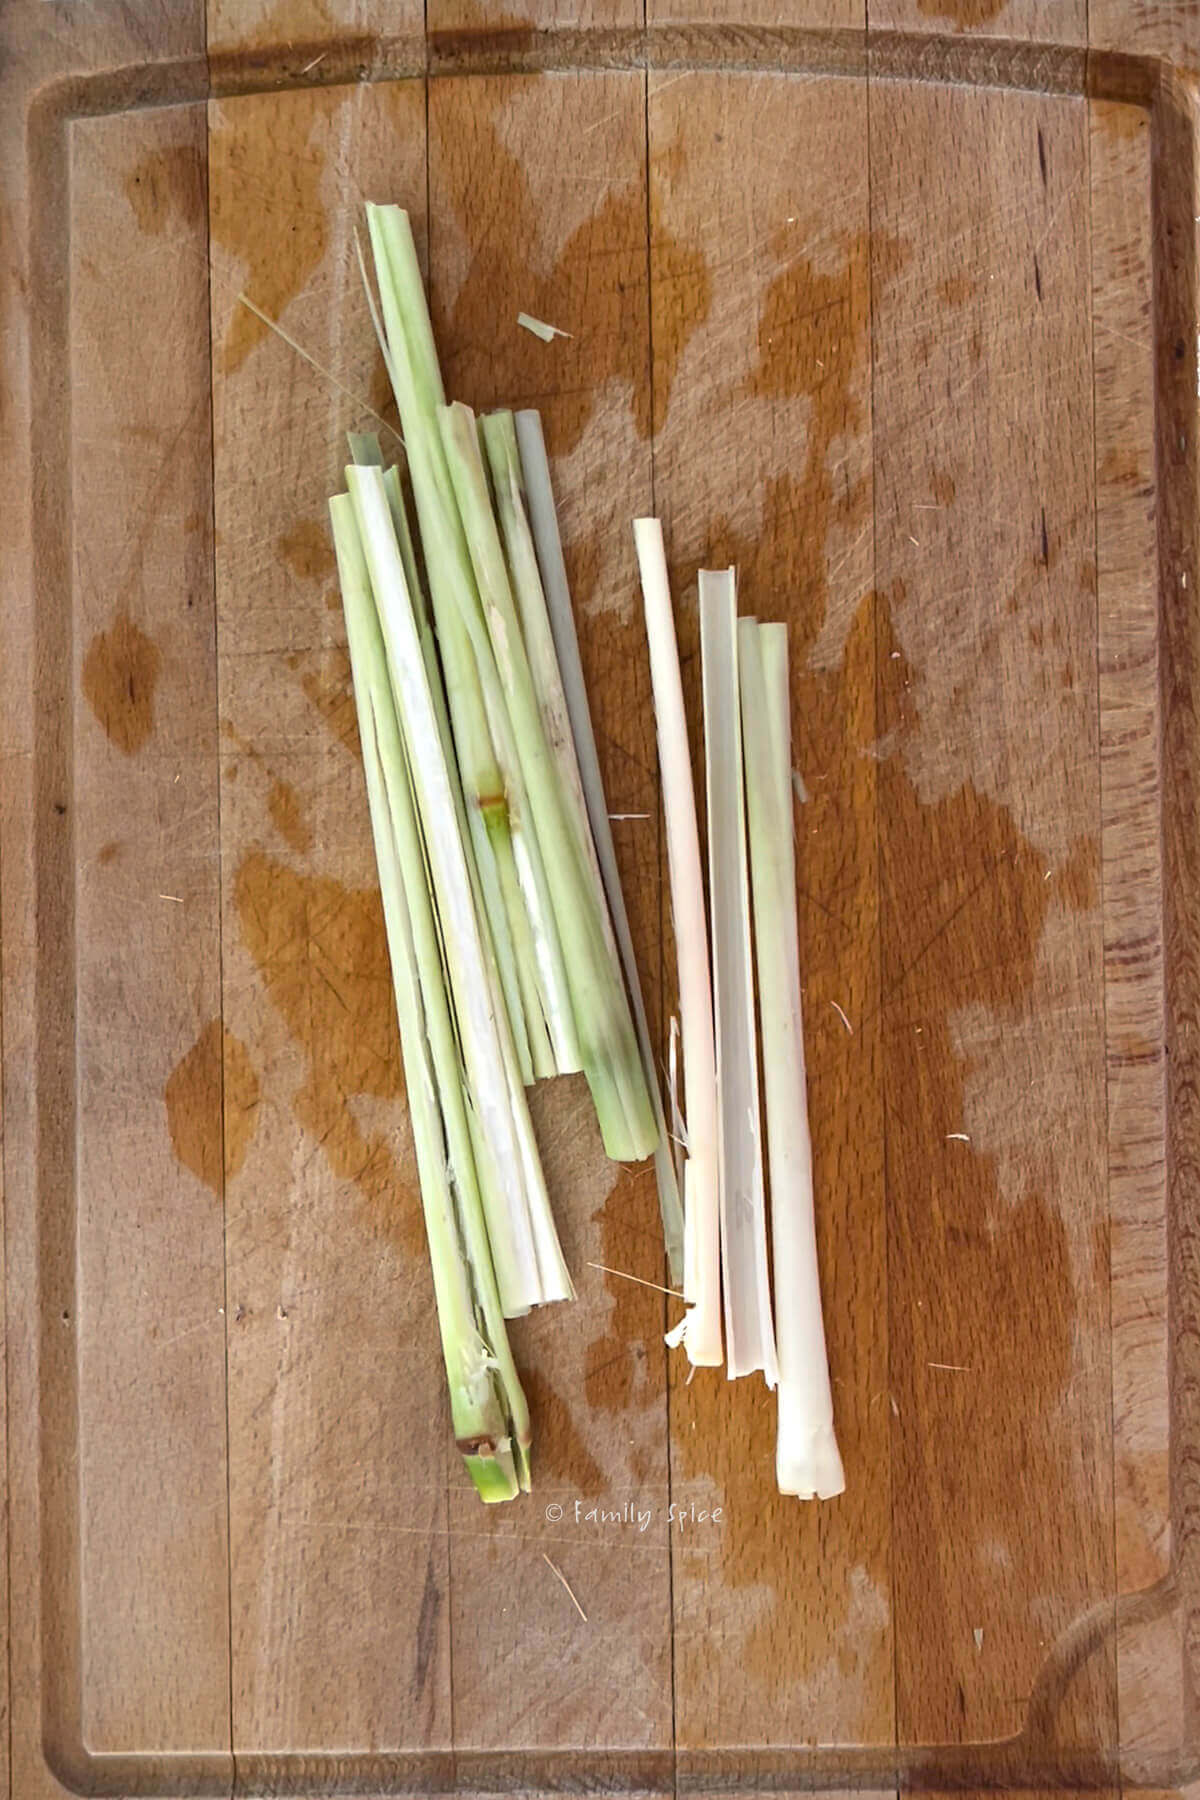 Lemongrass cut in strips on a cutting board